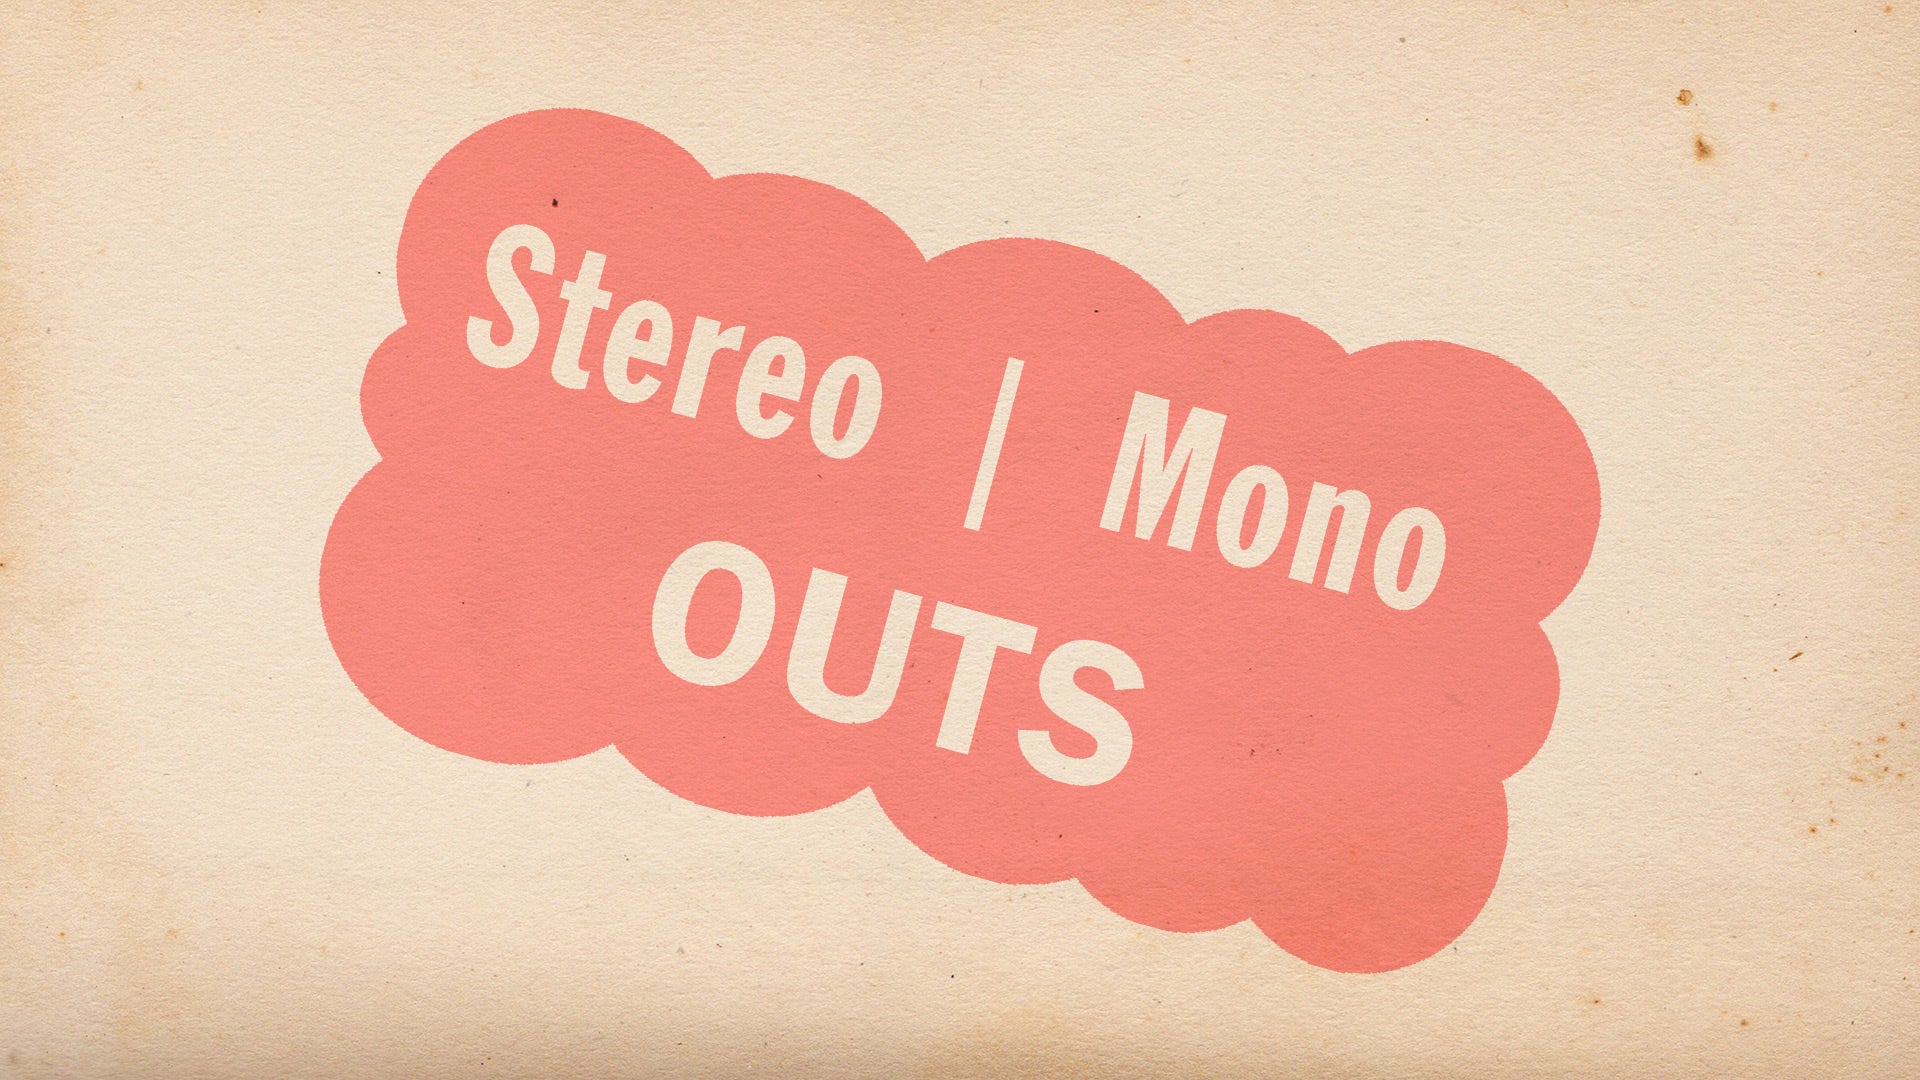 Stereo | Mono OUTS